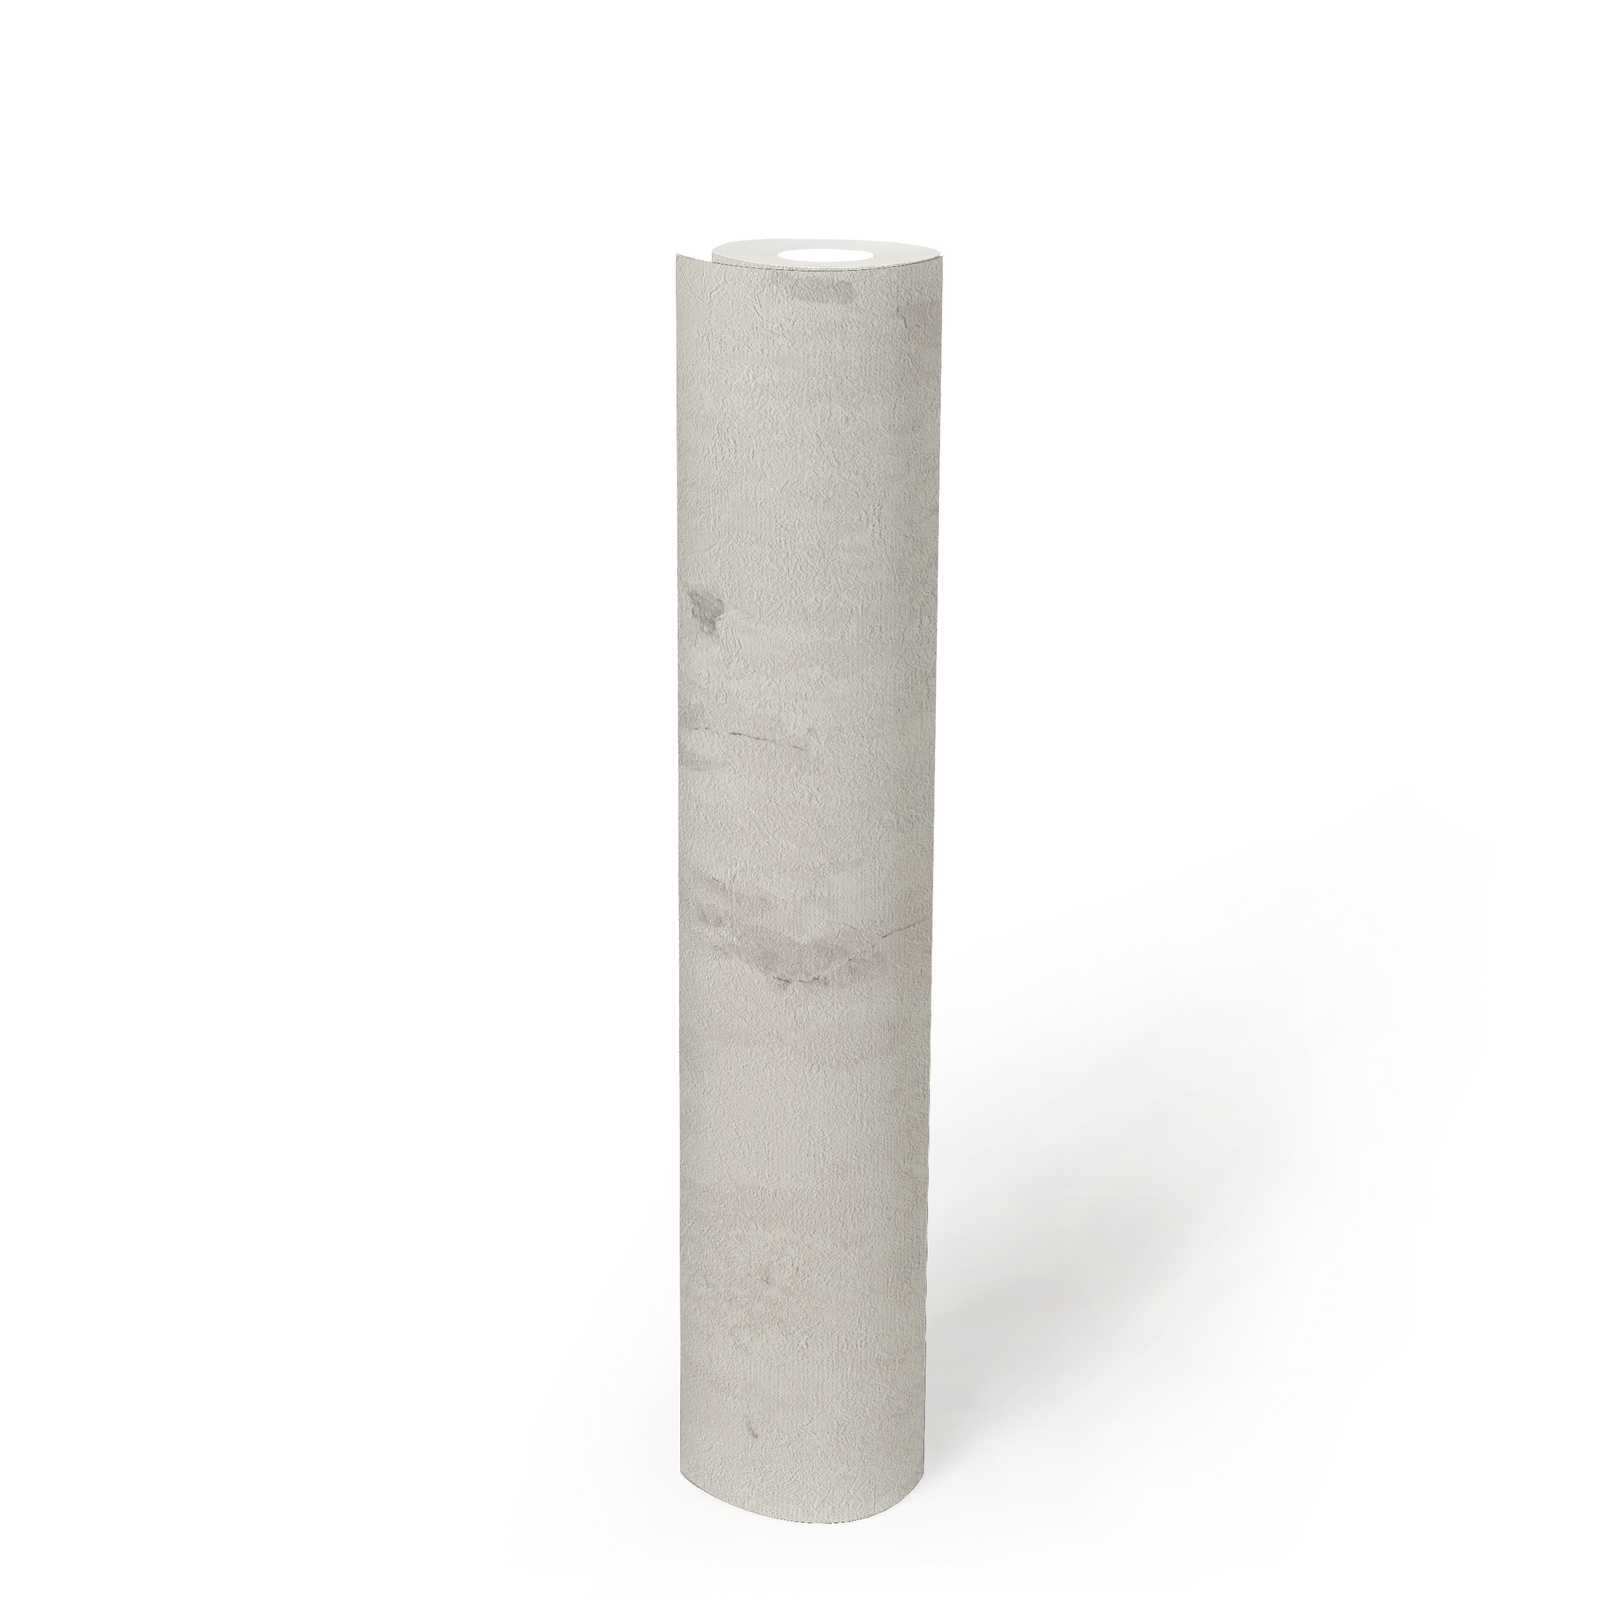             Carta da parati in tessuto non tessuto con design rustico in look used - crema, grigio, bianco
        